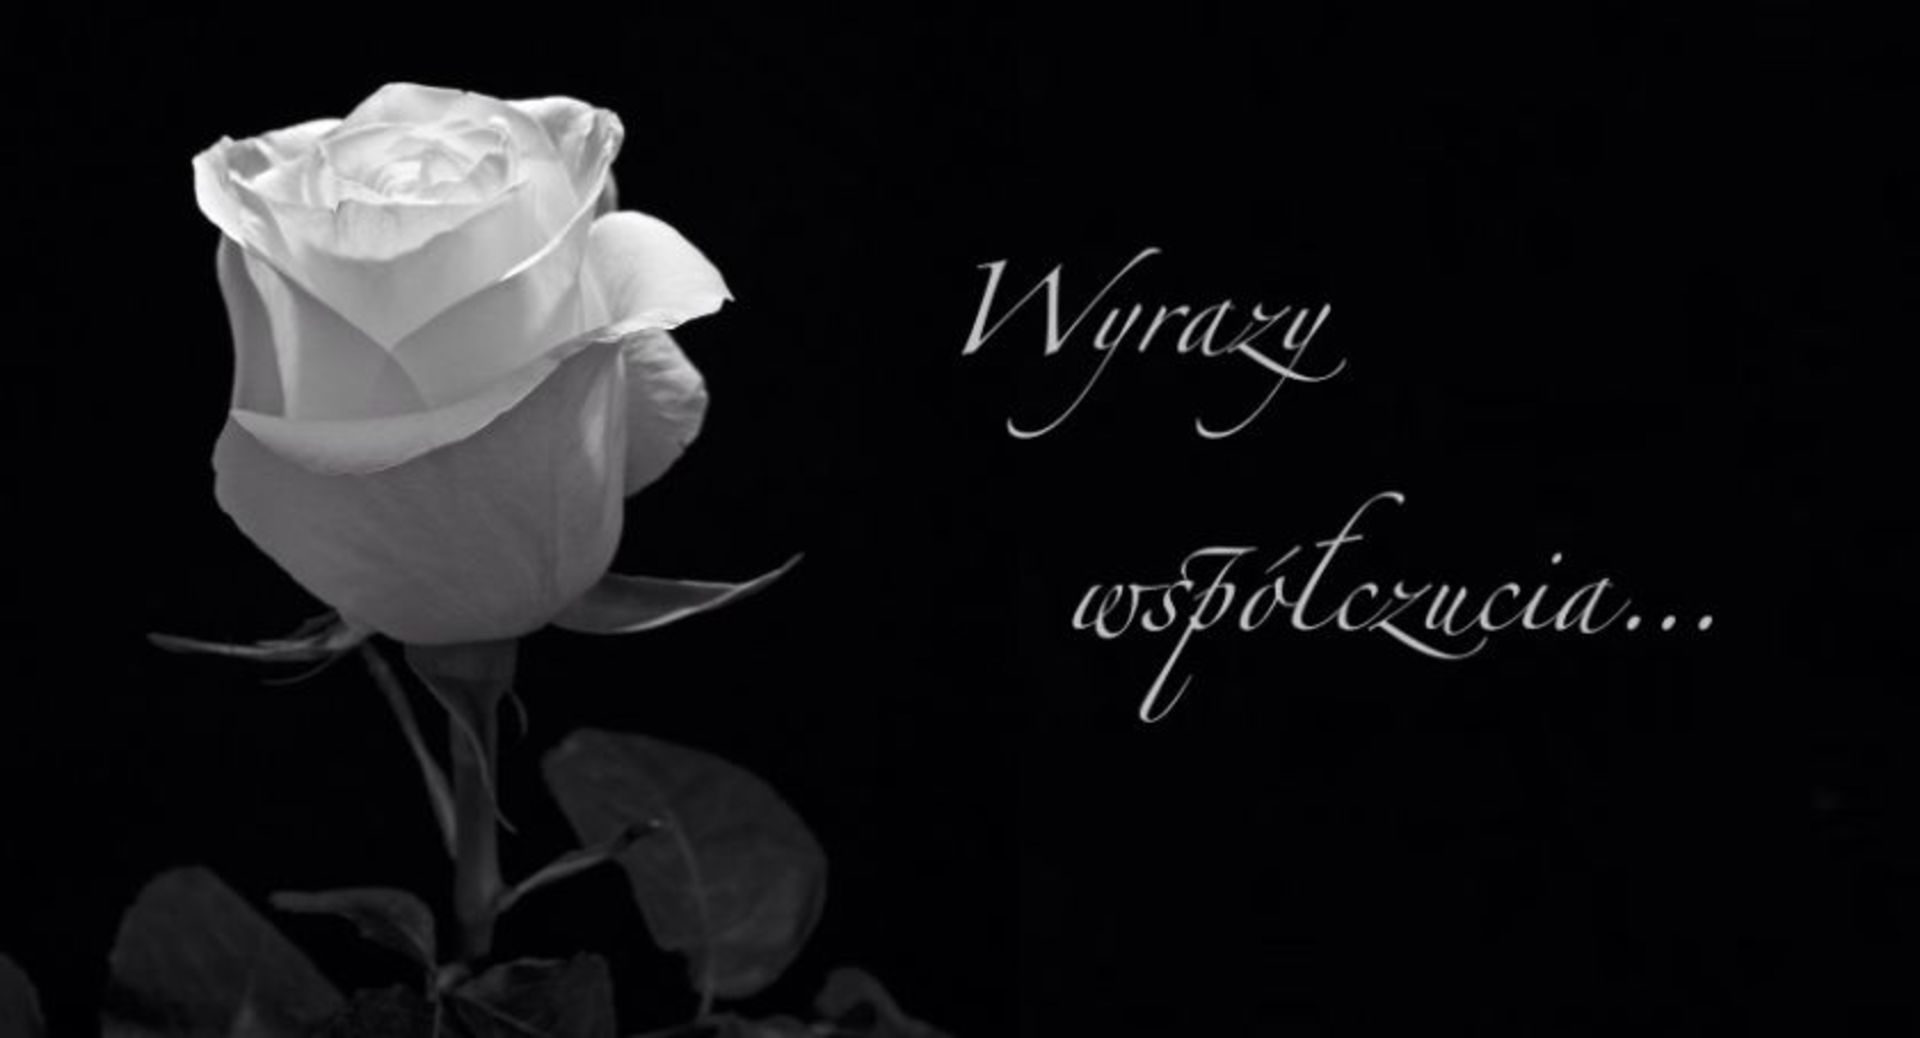 białoczarne zdjęcie biała róża i napis wyrazy współczucia.jpeg